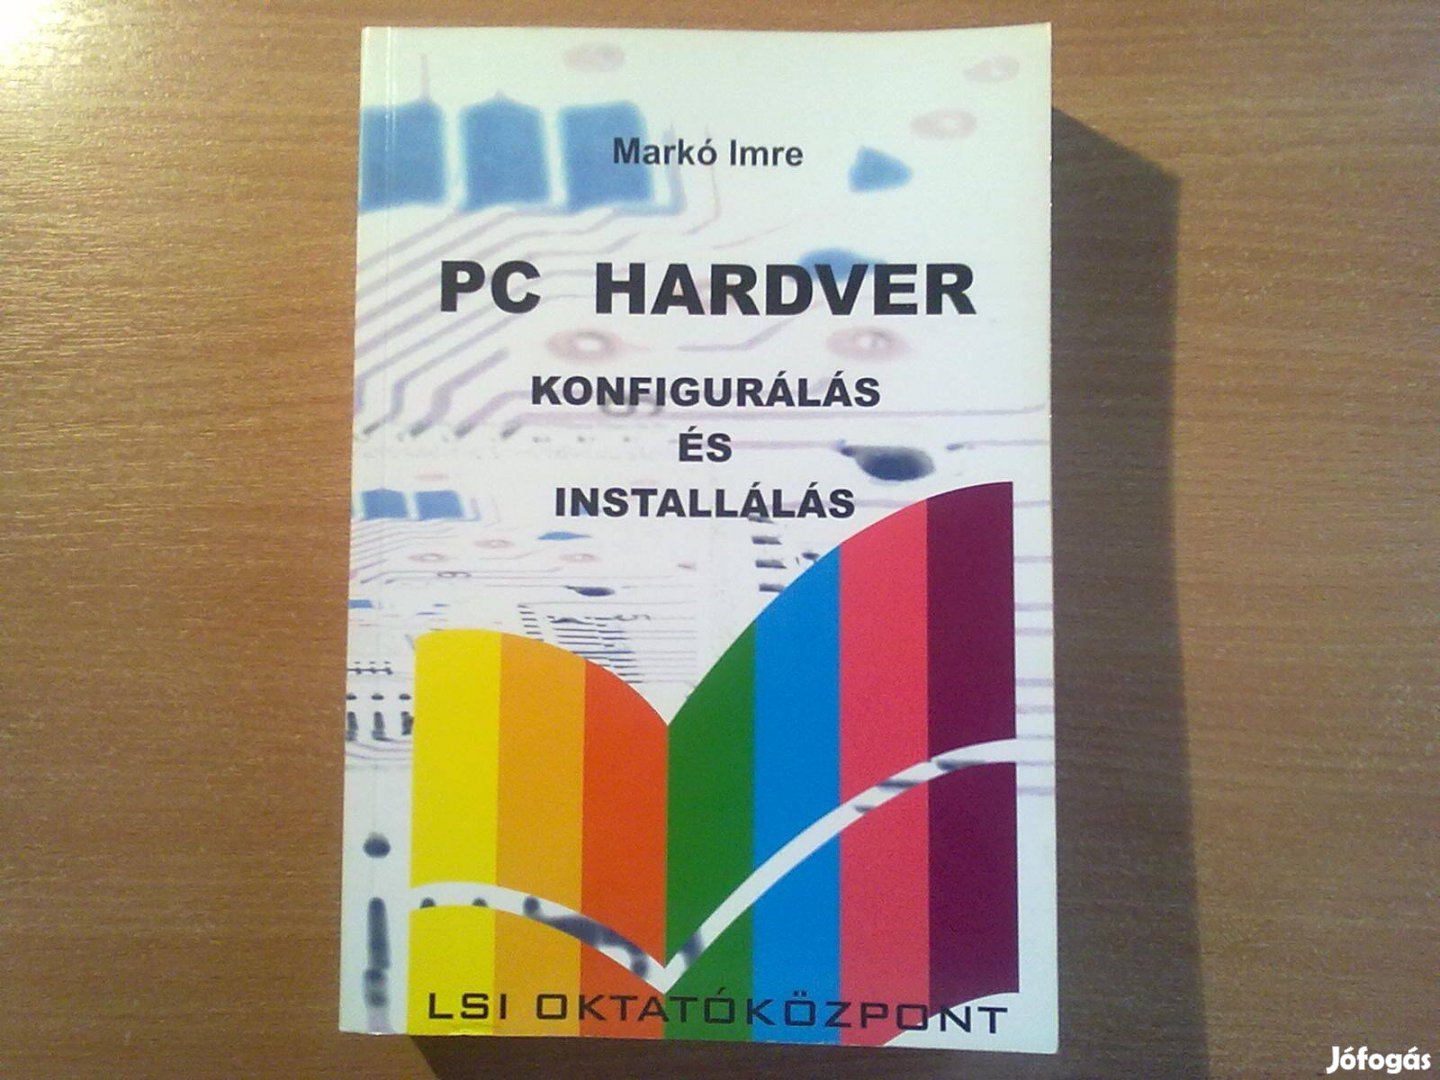 PC Hardver - konfigurálás és installálás (Egyszer olvasott könyv)